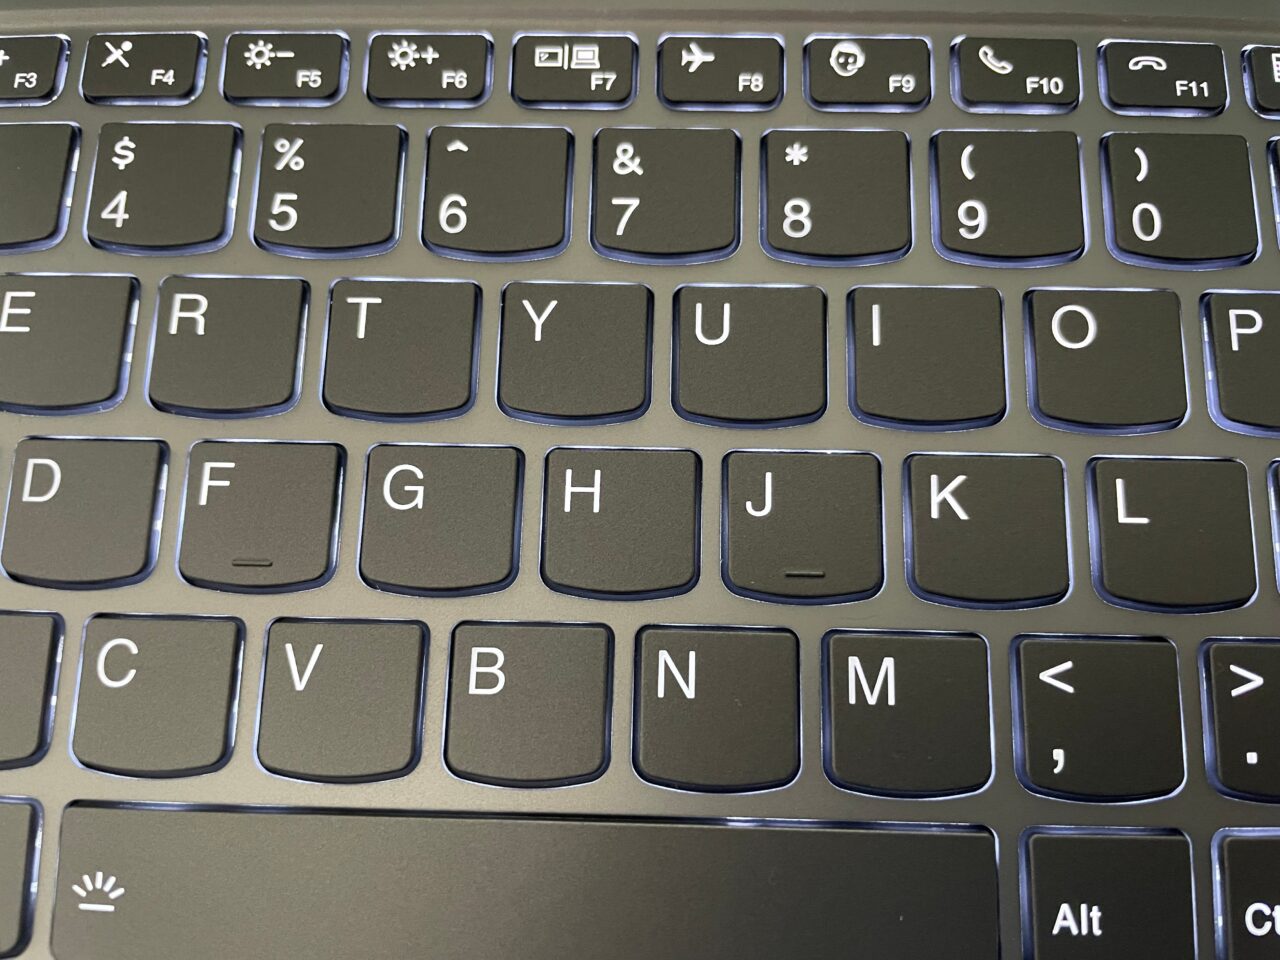 Część klawiatury komputerowej z widocznymi klawiszami od F4 do F11, rzędem cyfr od 4 do 0 oraz literami od 'Q' do 'P' i od 'A' do 'L'.